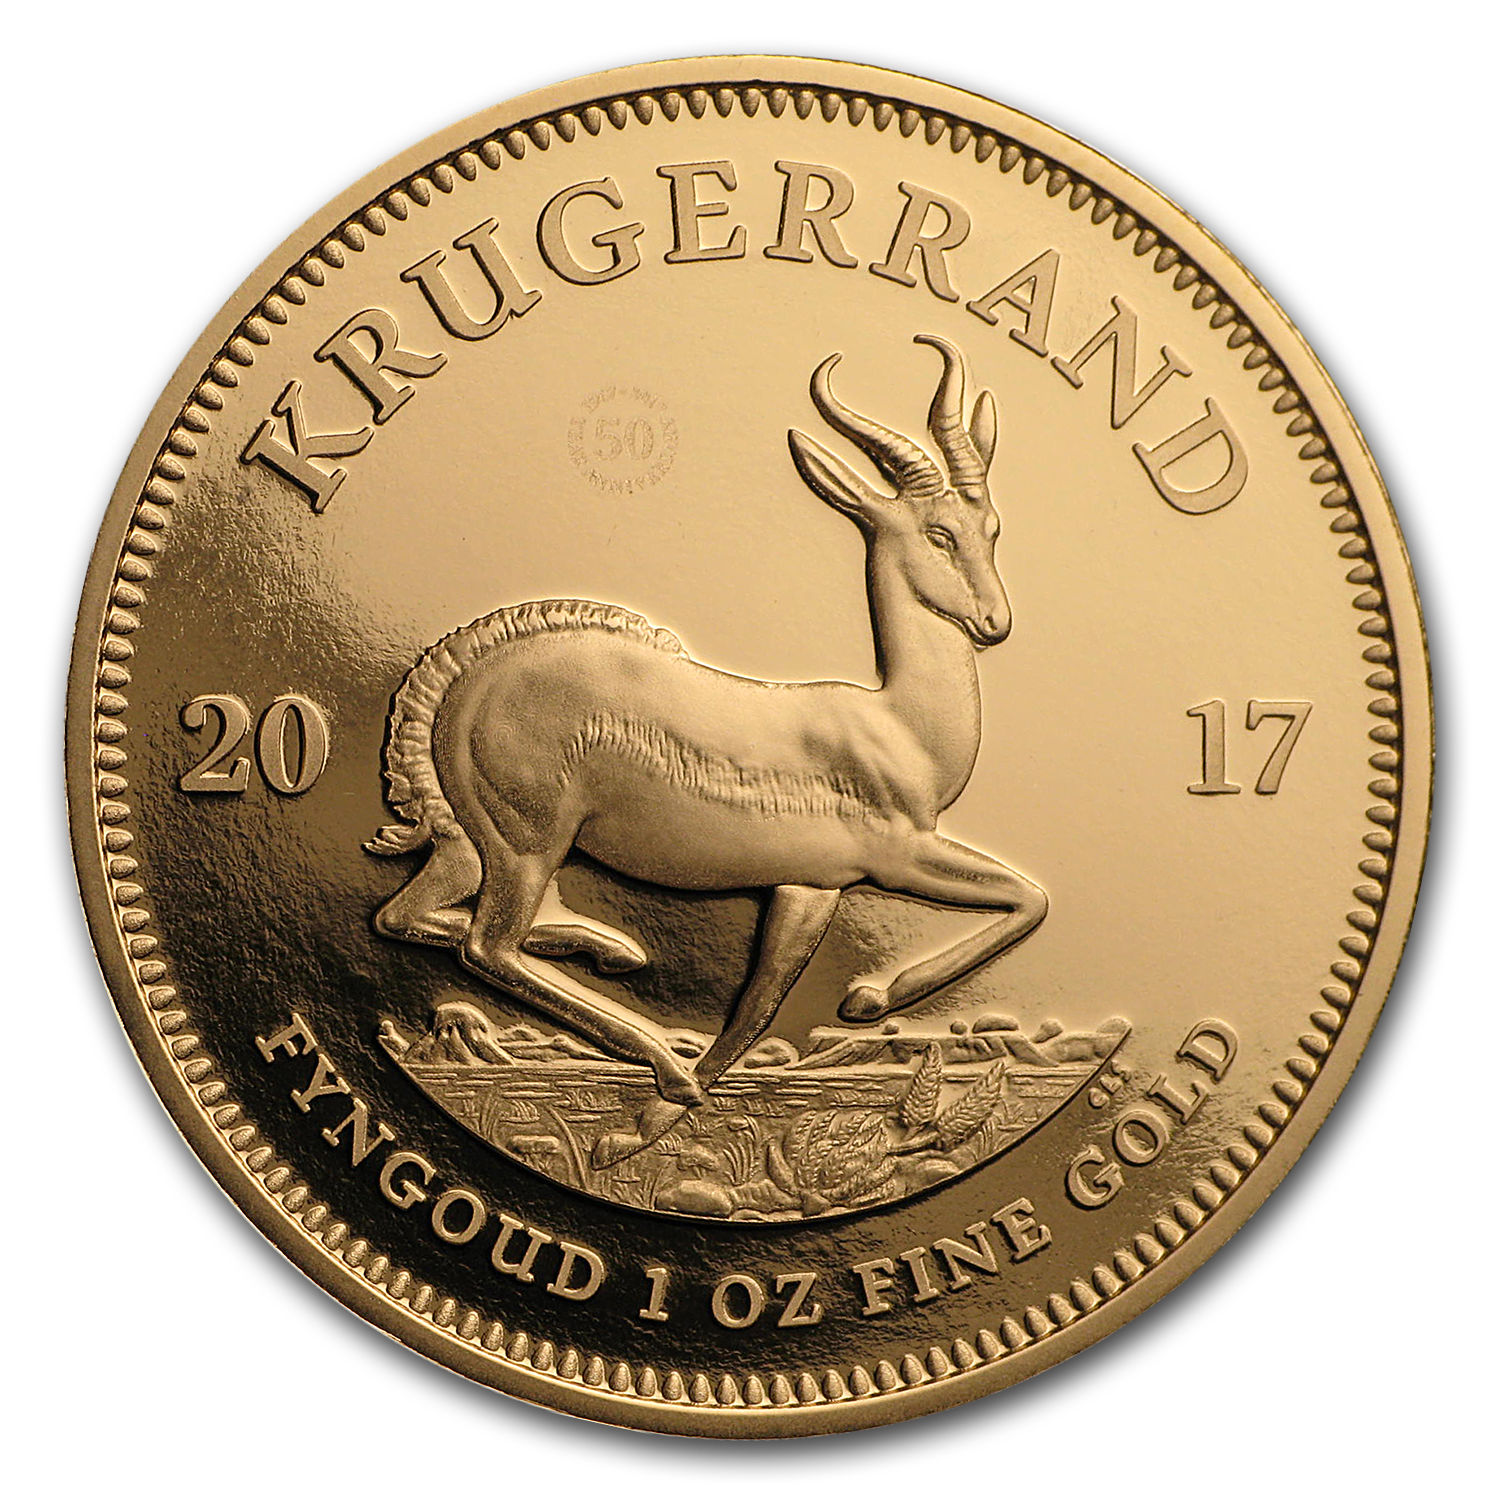 2017 South Africa 1 oz Proof Gold Krugerrand - SKU #105152